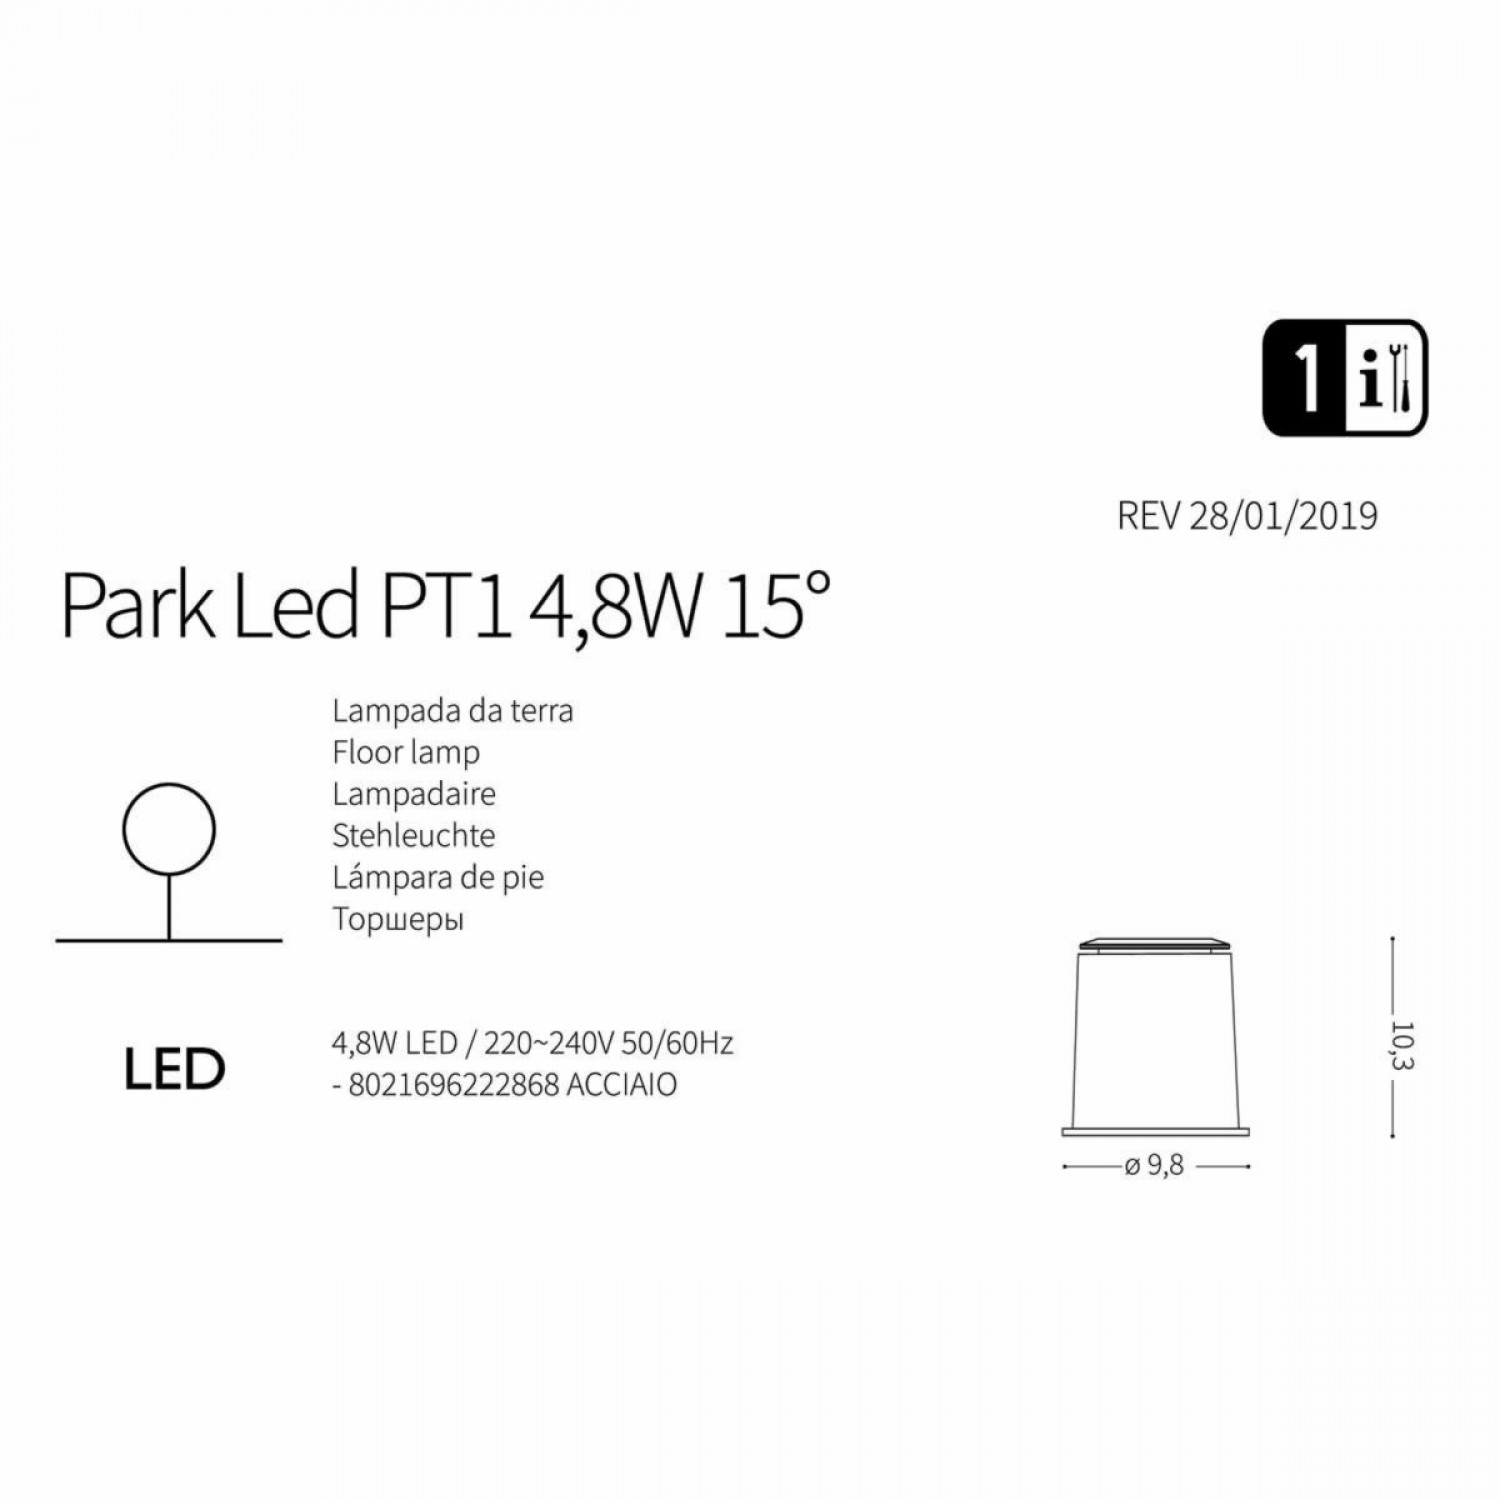 Грунтовой светильник Ideal Lux PARK LED PT 04.8W 05° 222868